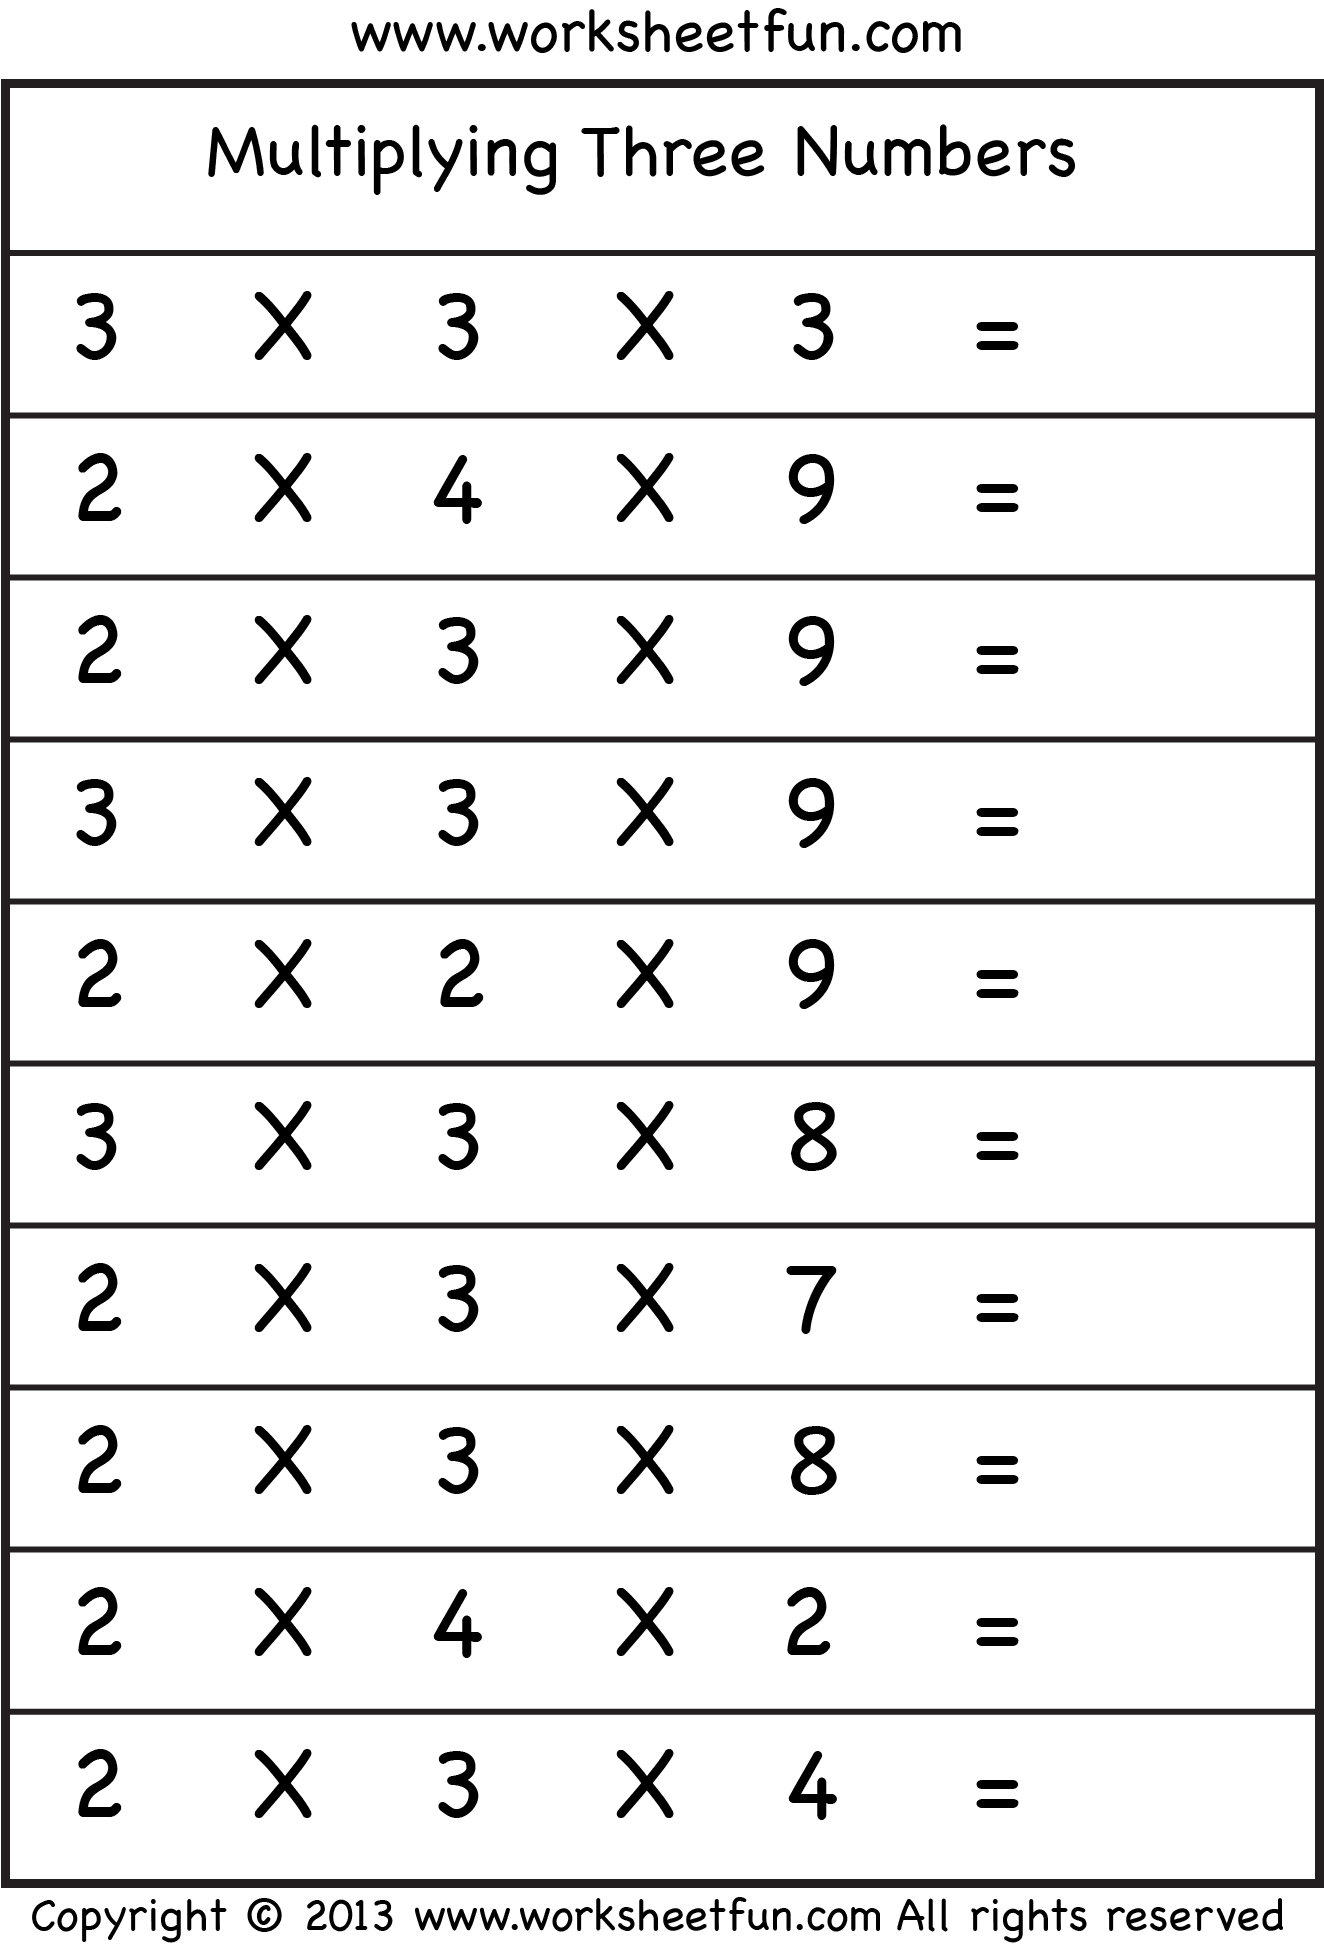 multiplying-3-numbers-three-worksheets-free-printable-worksheets